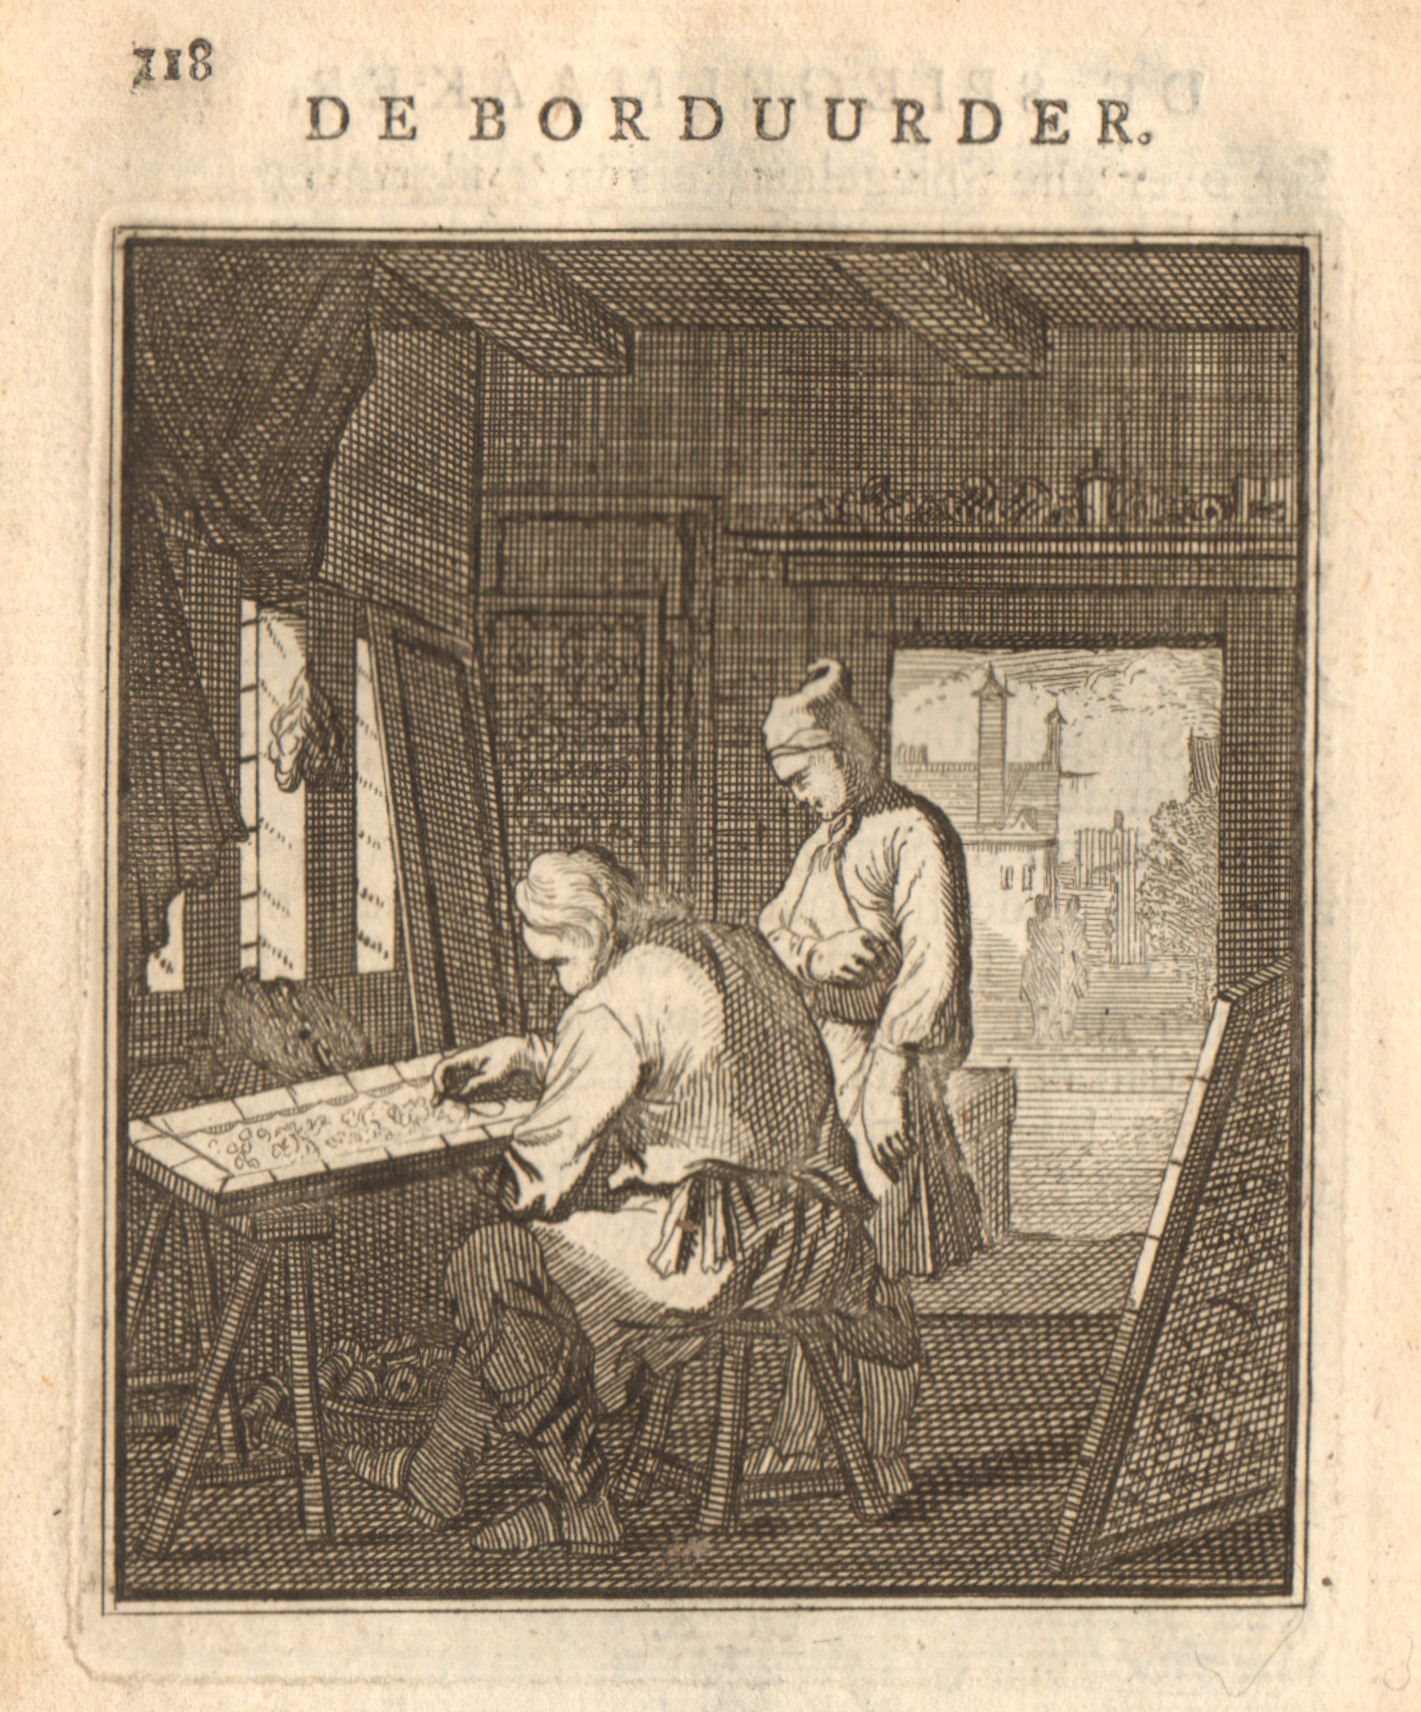 De borduurder, 18e eeuw.